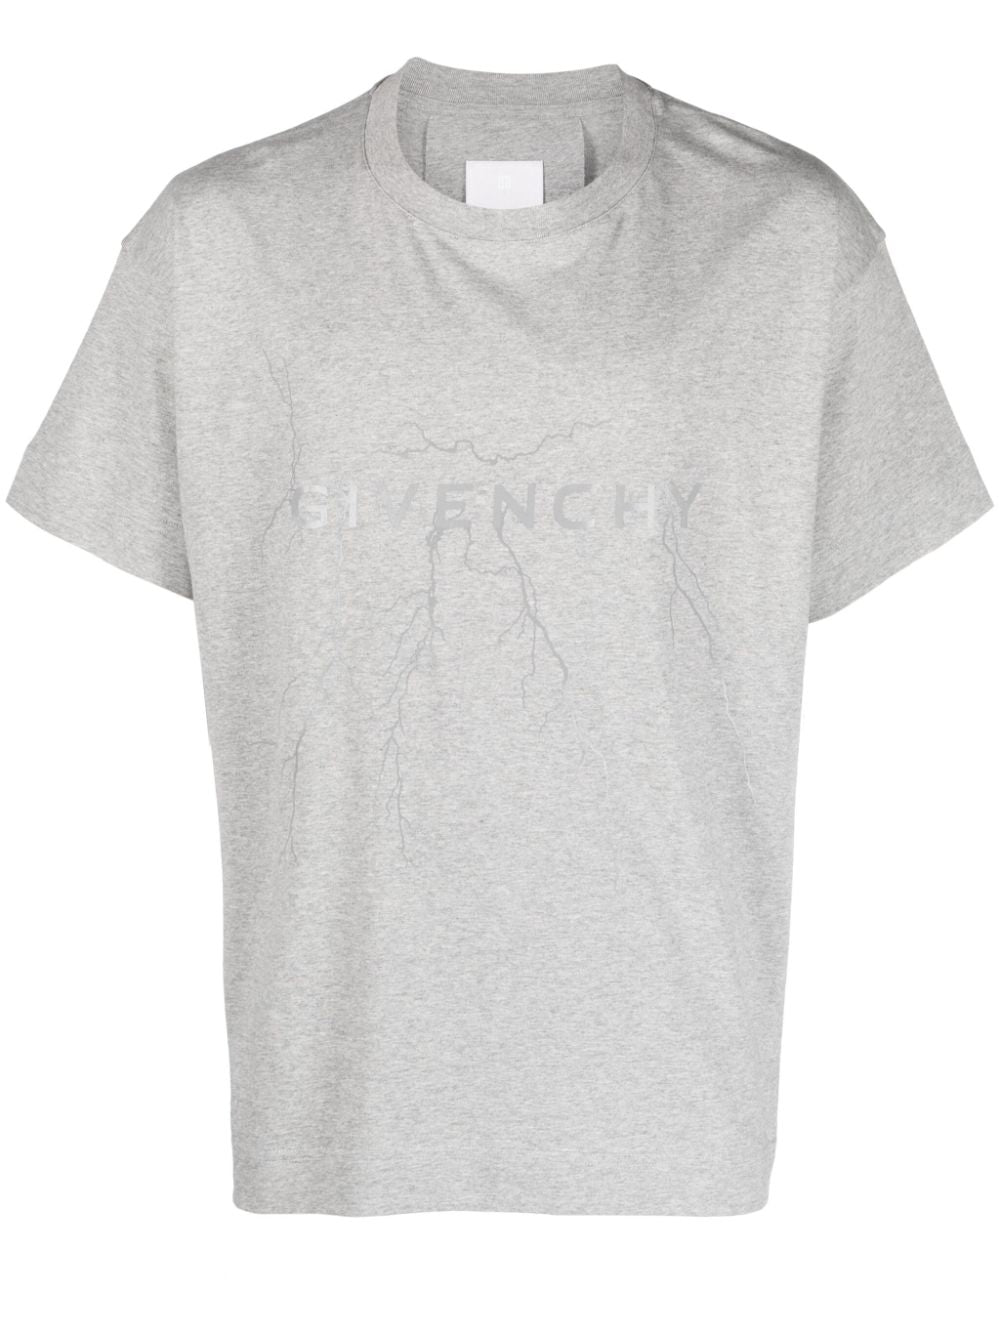 T-shirt grigio chiaro con logo frontale